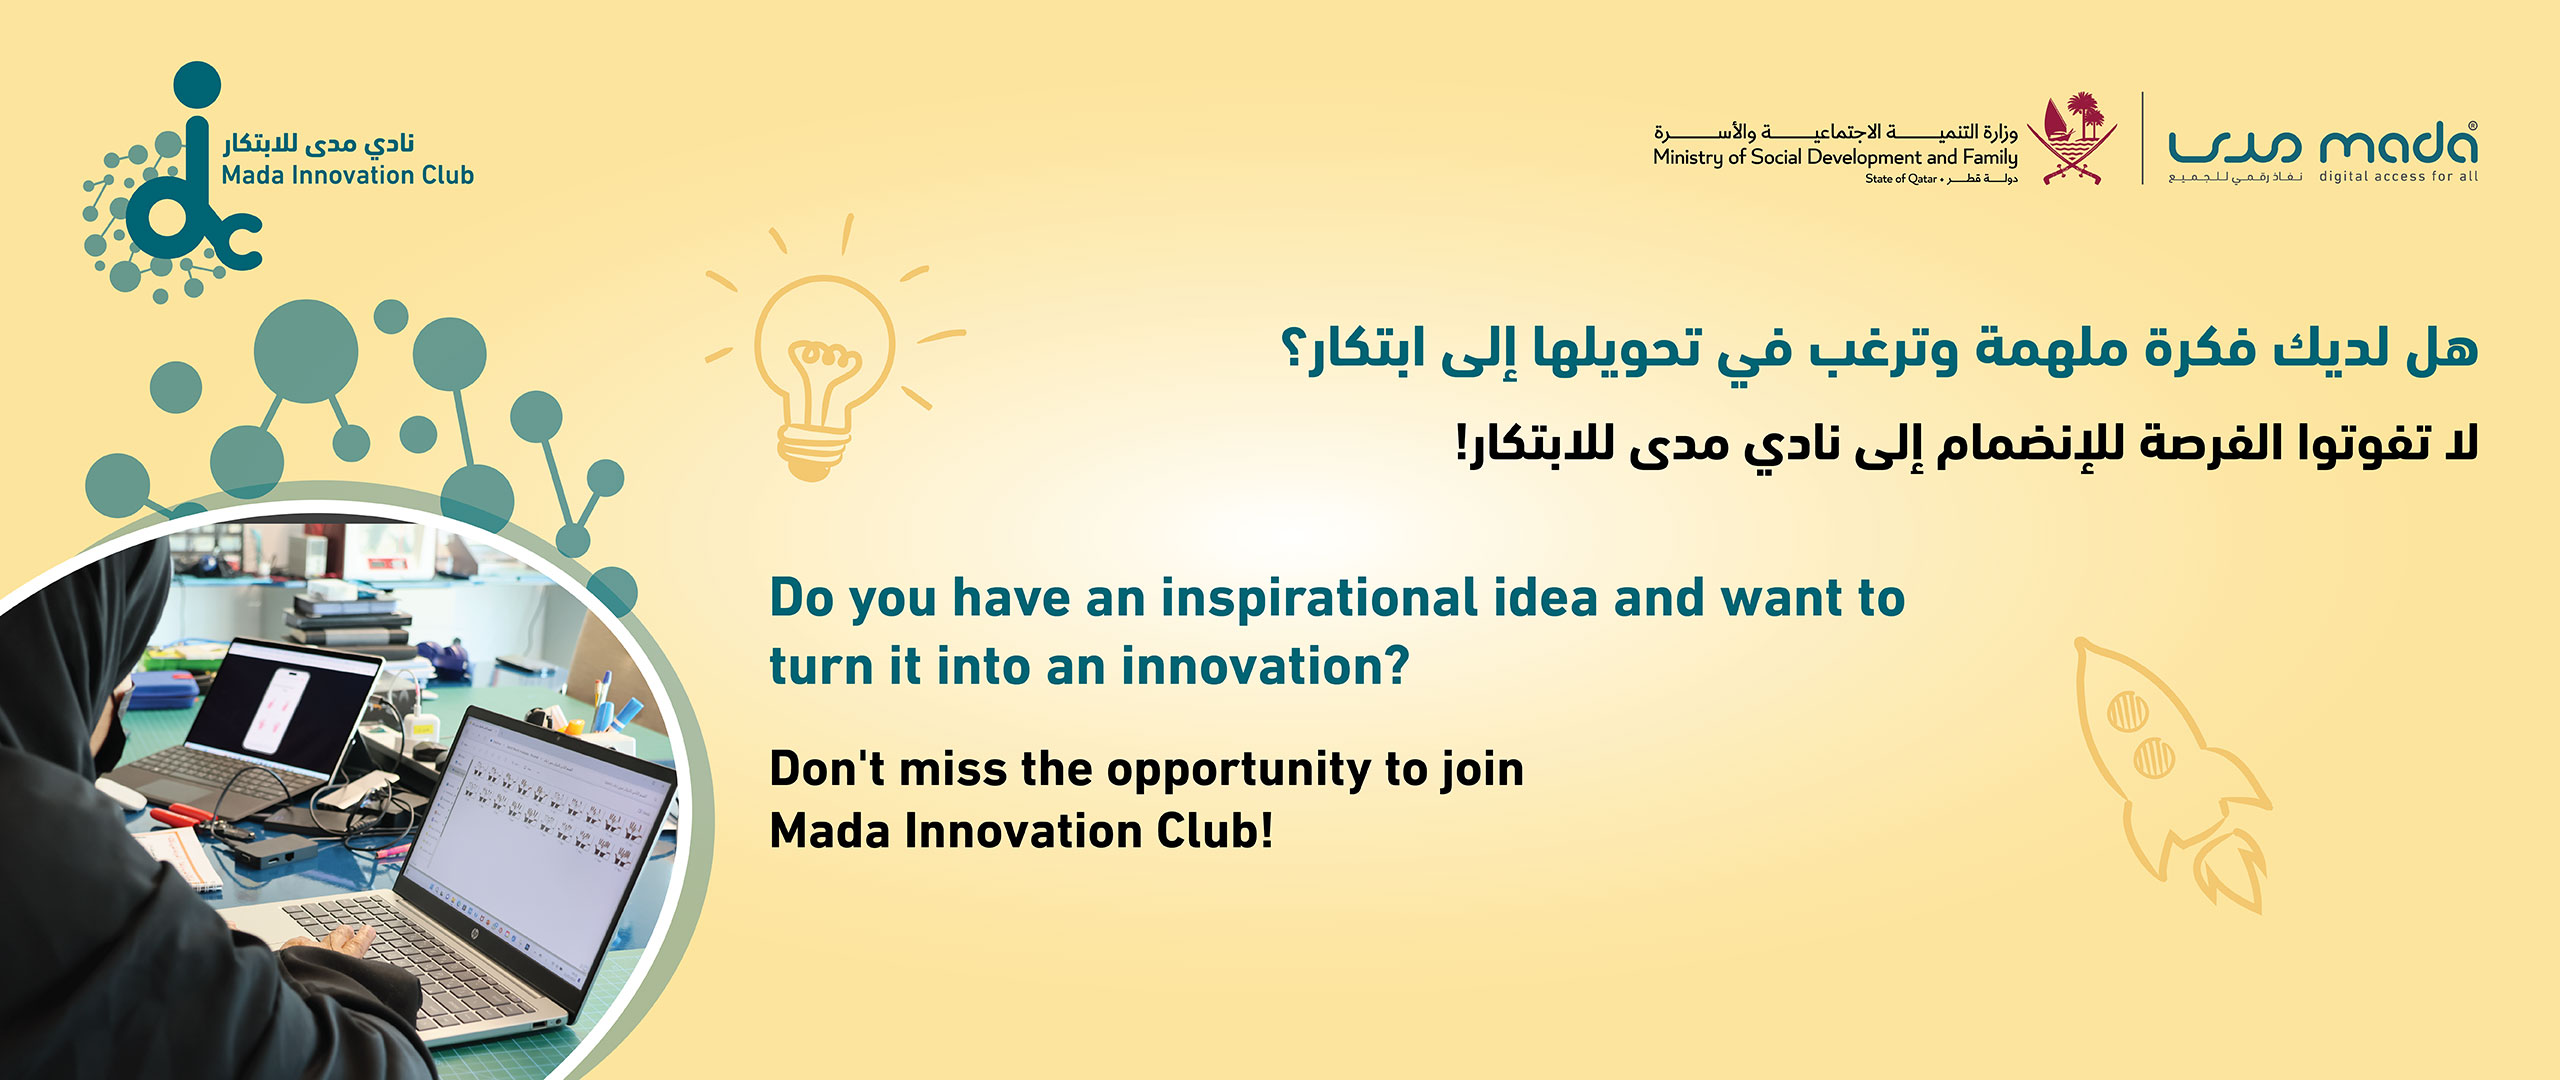 Mada innovation Club